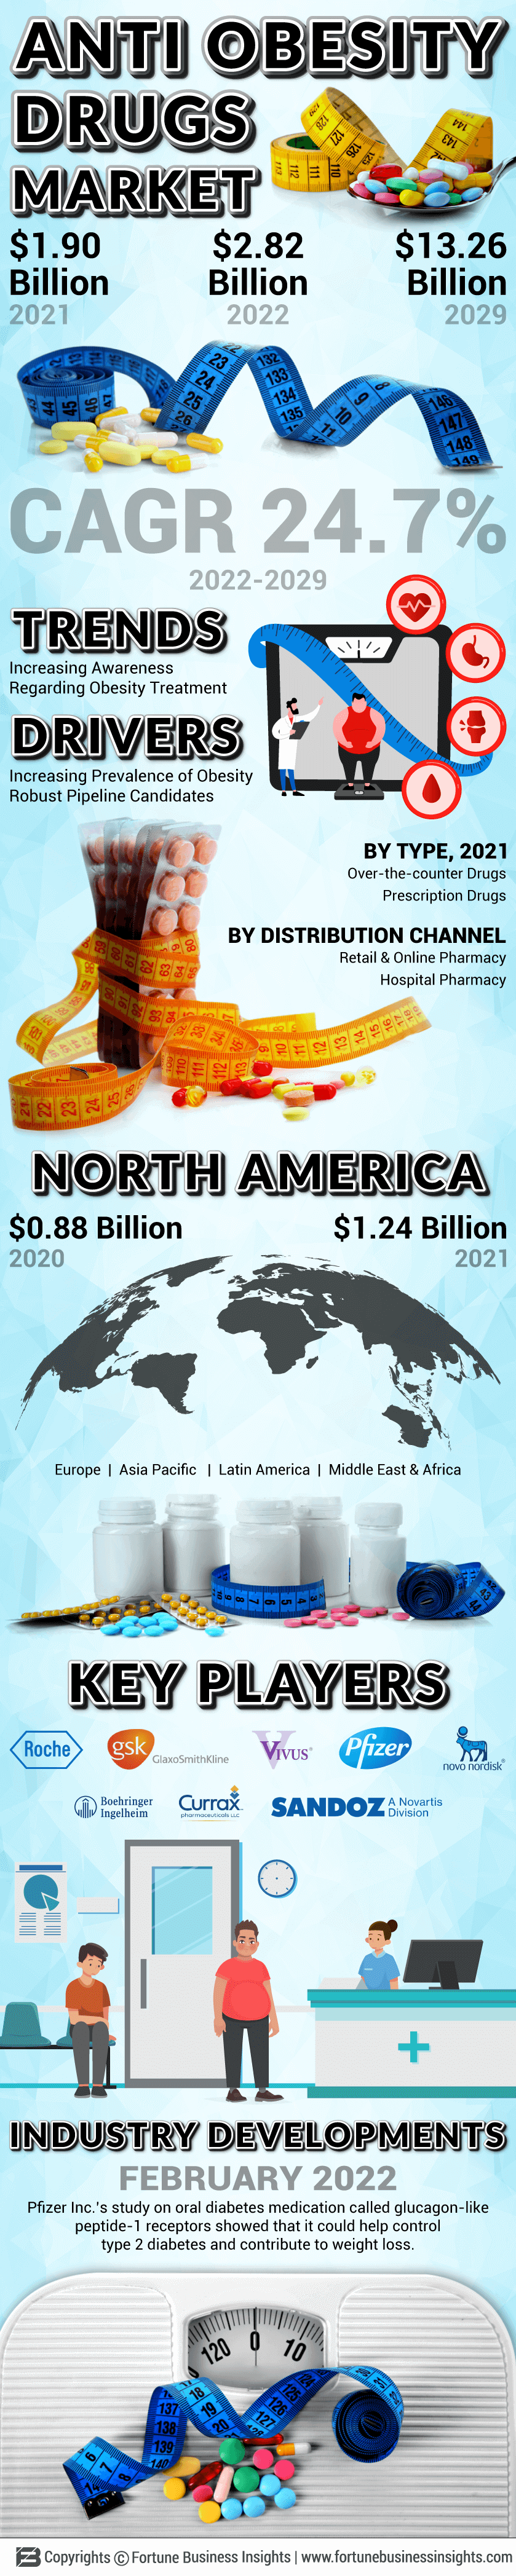 抗肥胖药物市场